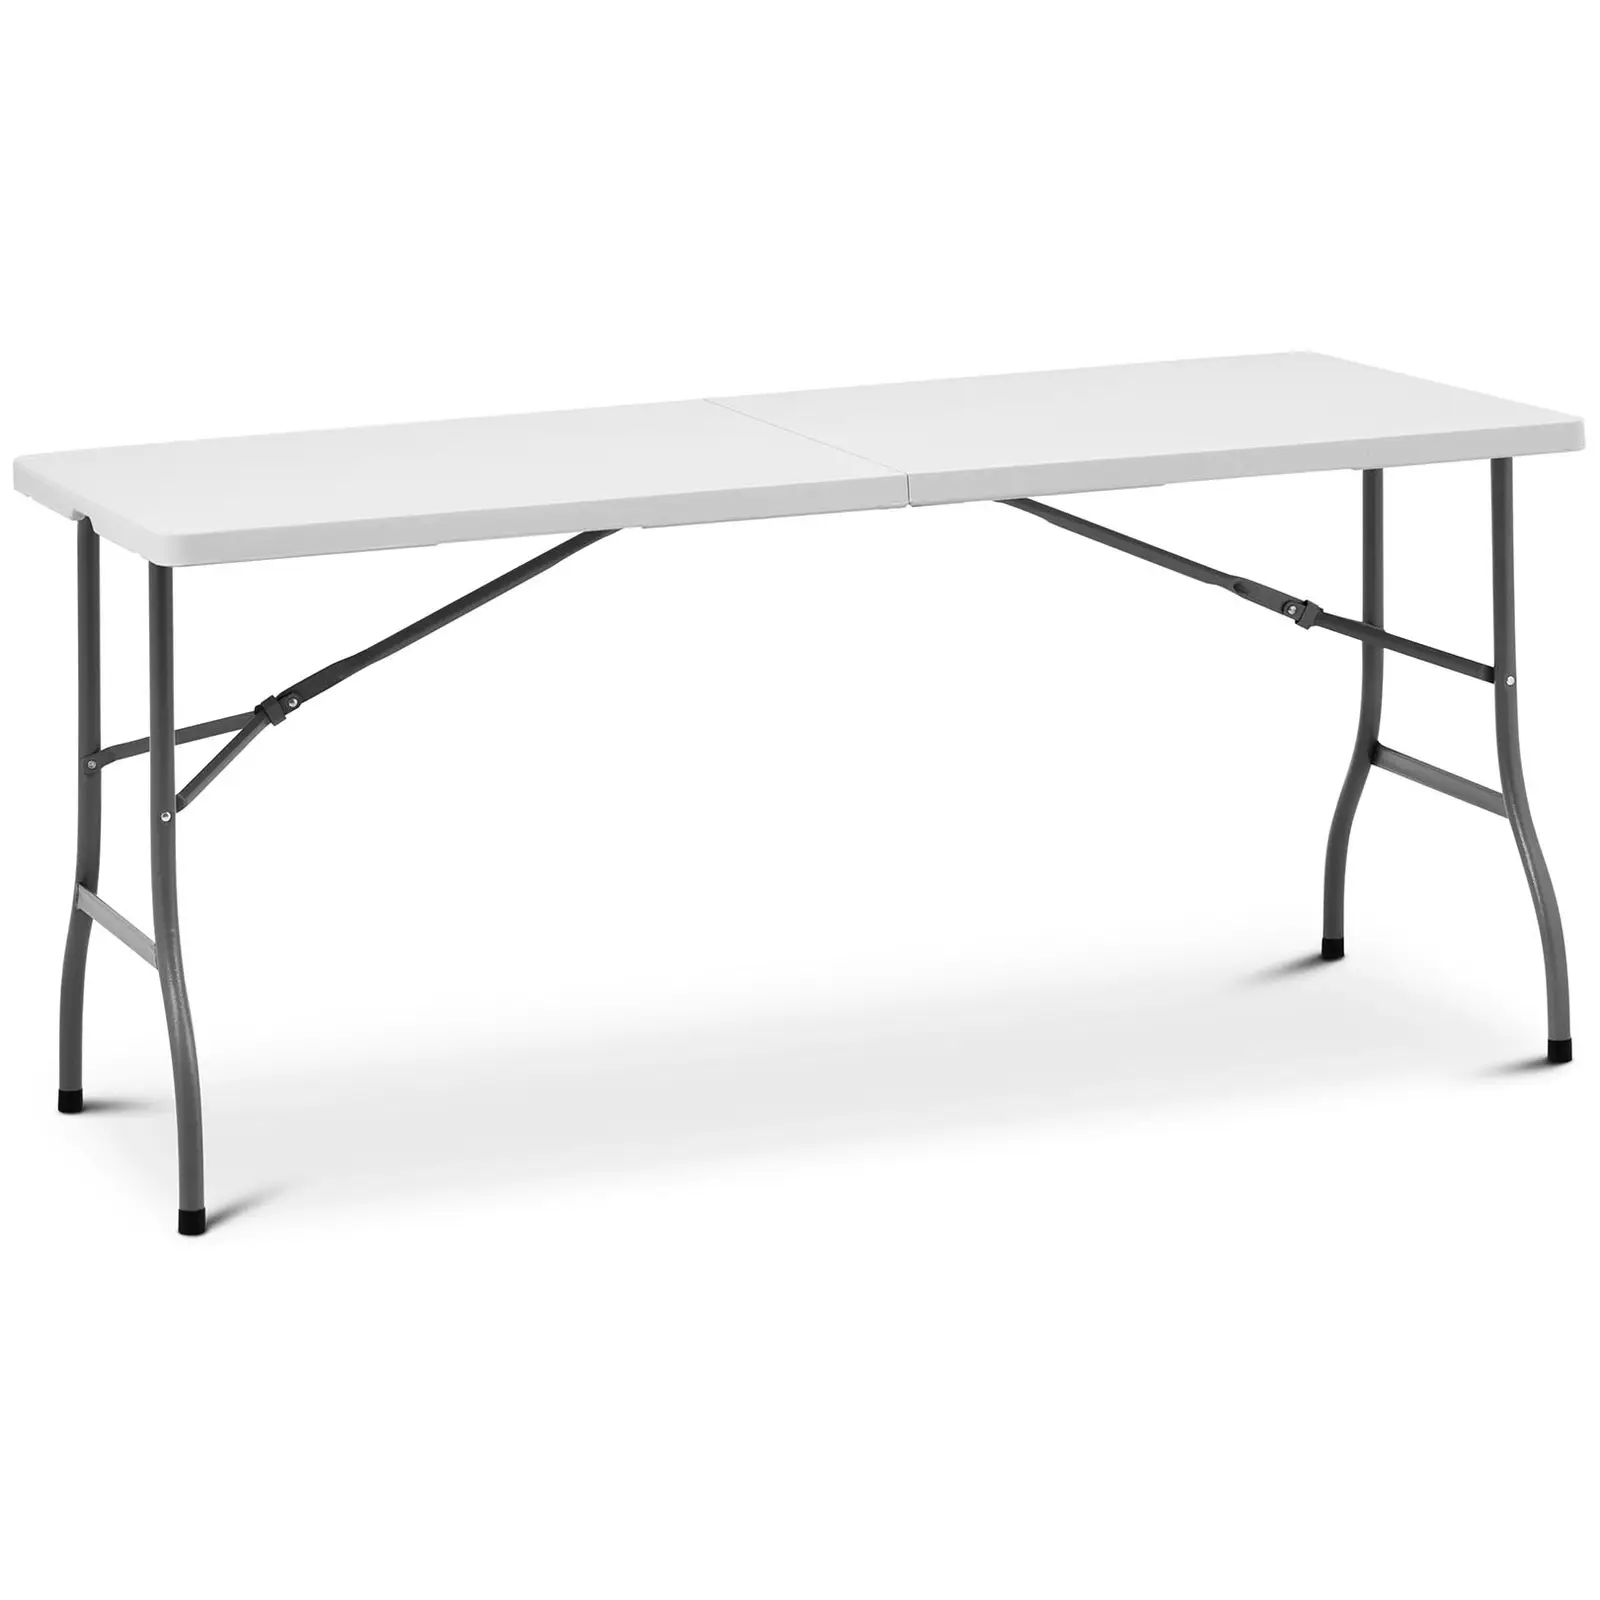 Összecsukható asztal - 1520 x 700 x 740 mm - Royal Catering - 150 kg - kültéri/beltéri - White